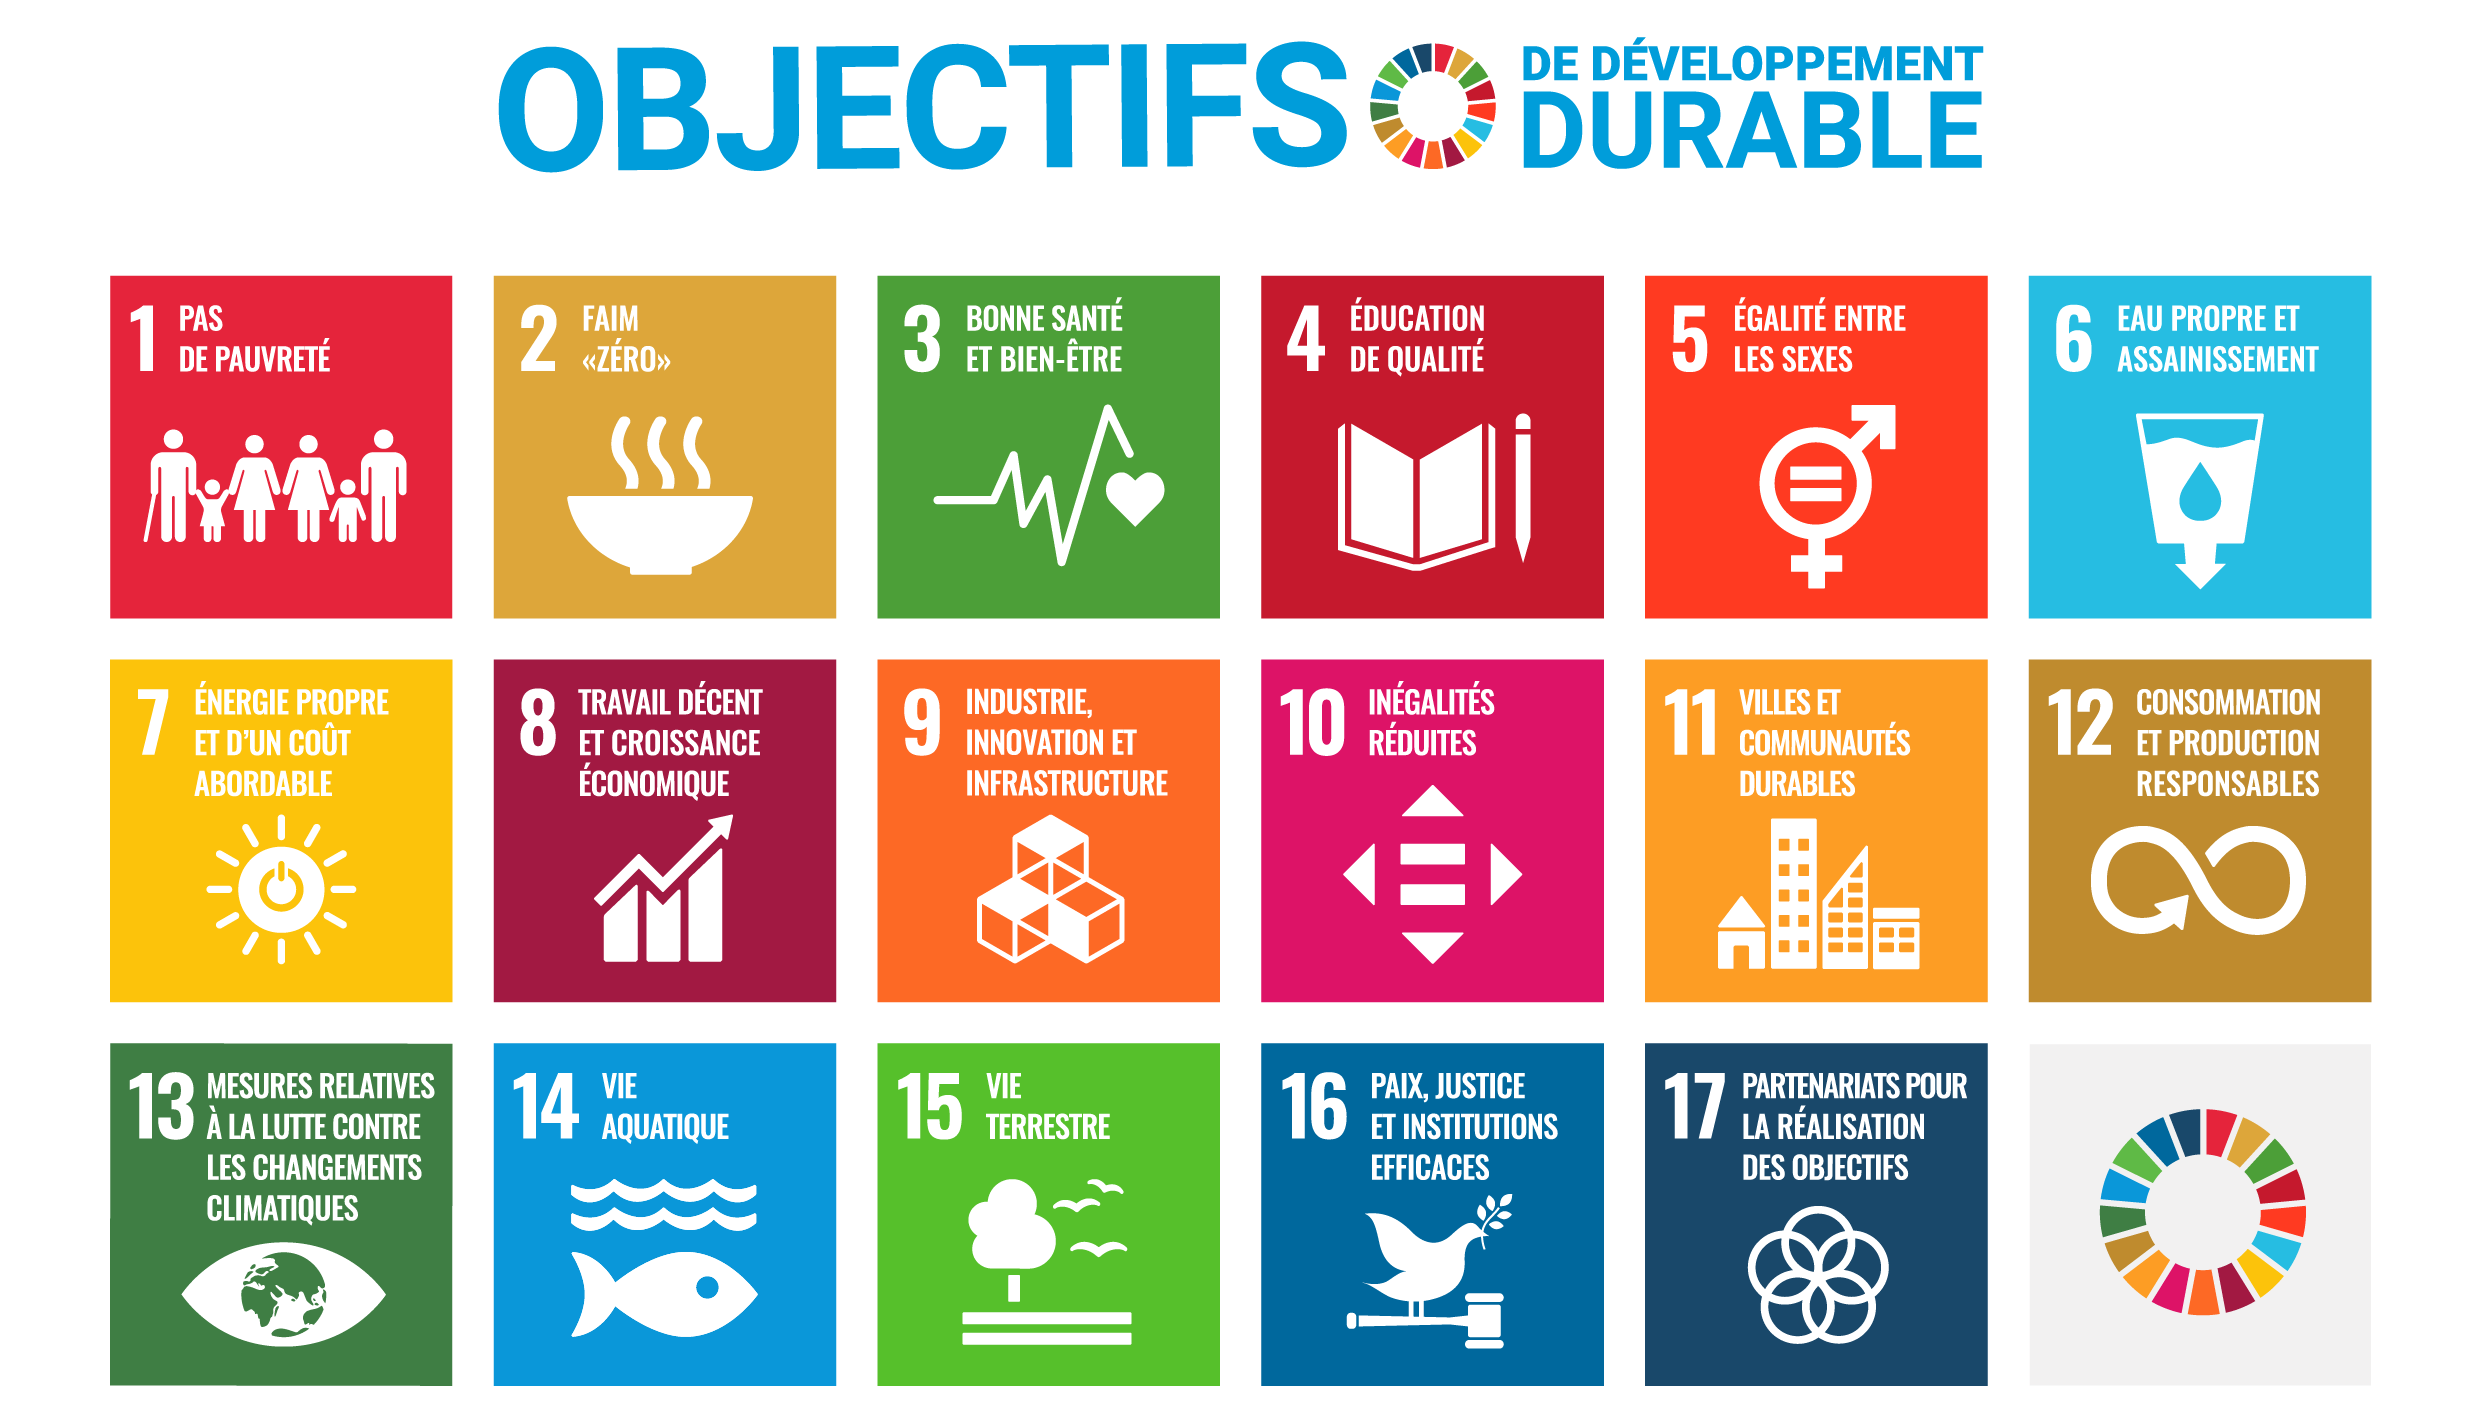 SDG Poster of all 17 UN SDG Goals